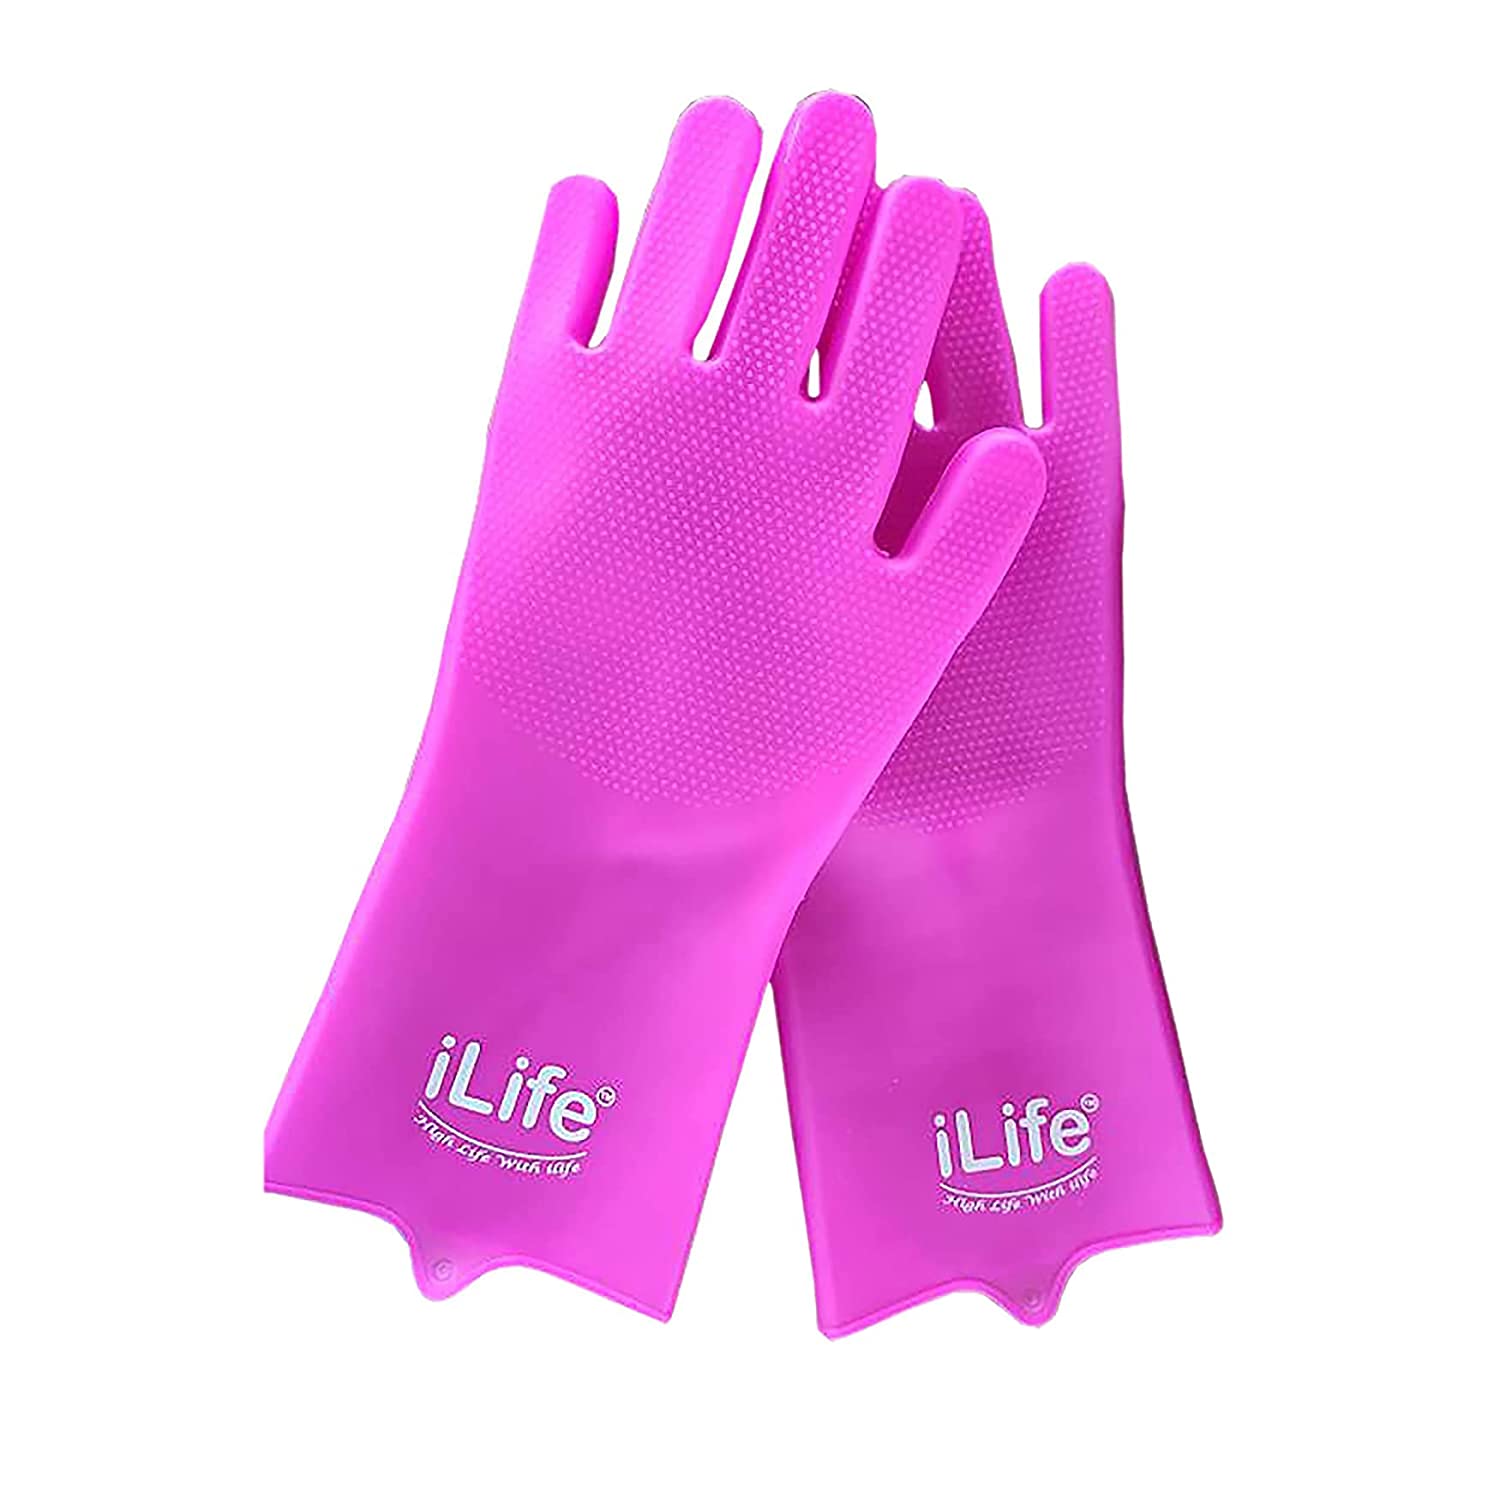  Silicone gloves; Scrub Gloves ; Bath Gloves ; pink scrub gloves